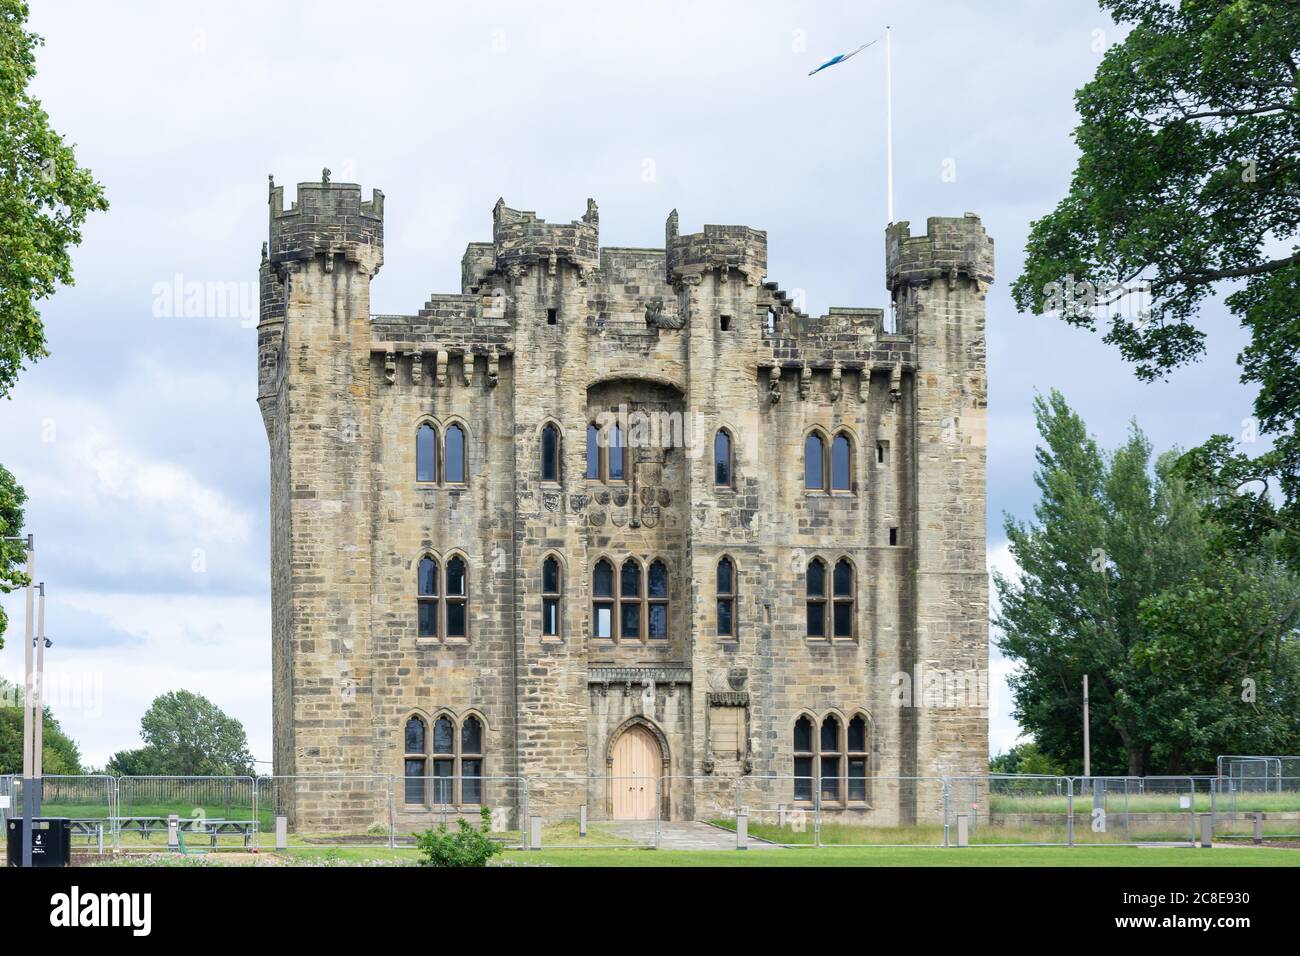 West facade, Hylton Castle, North Hylton, City of Sunderland, Tyne and Wear, England, United Kingdom Stock Photo